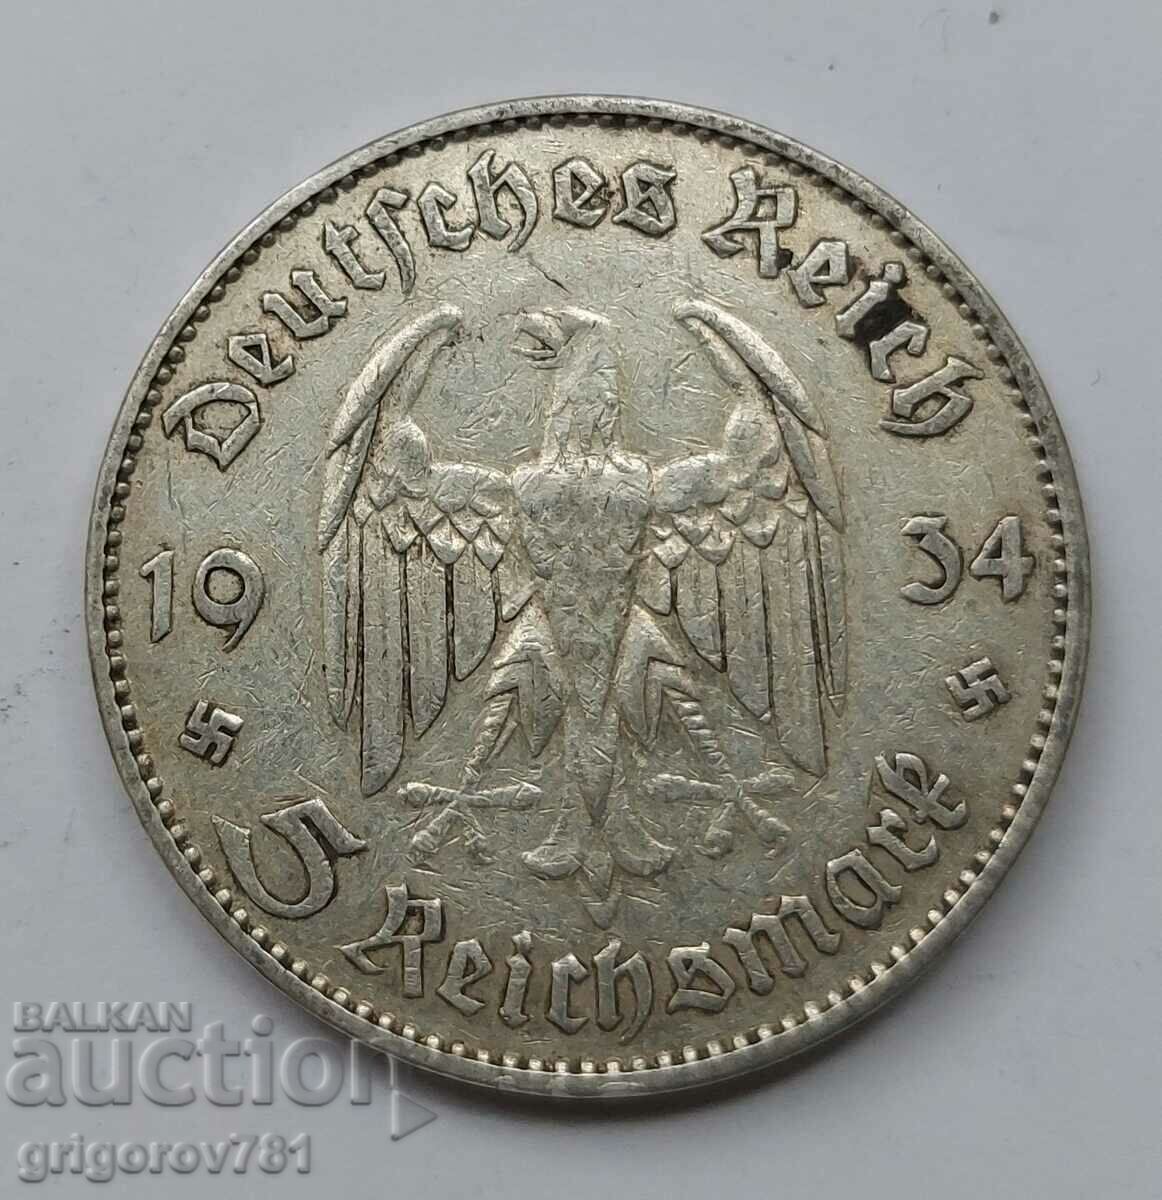 Moneda de argint 5 Mark Germania 1934 J III Reich #80